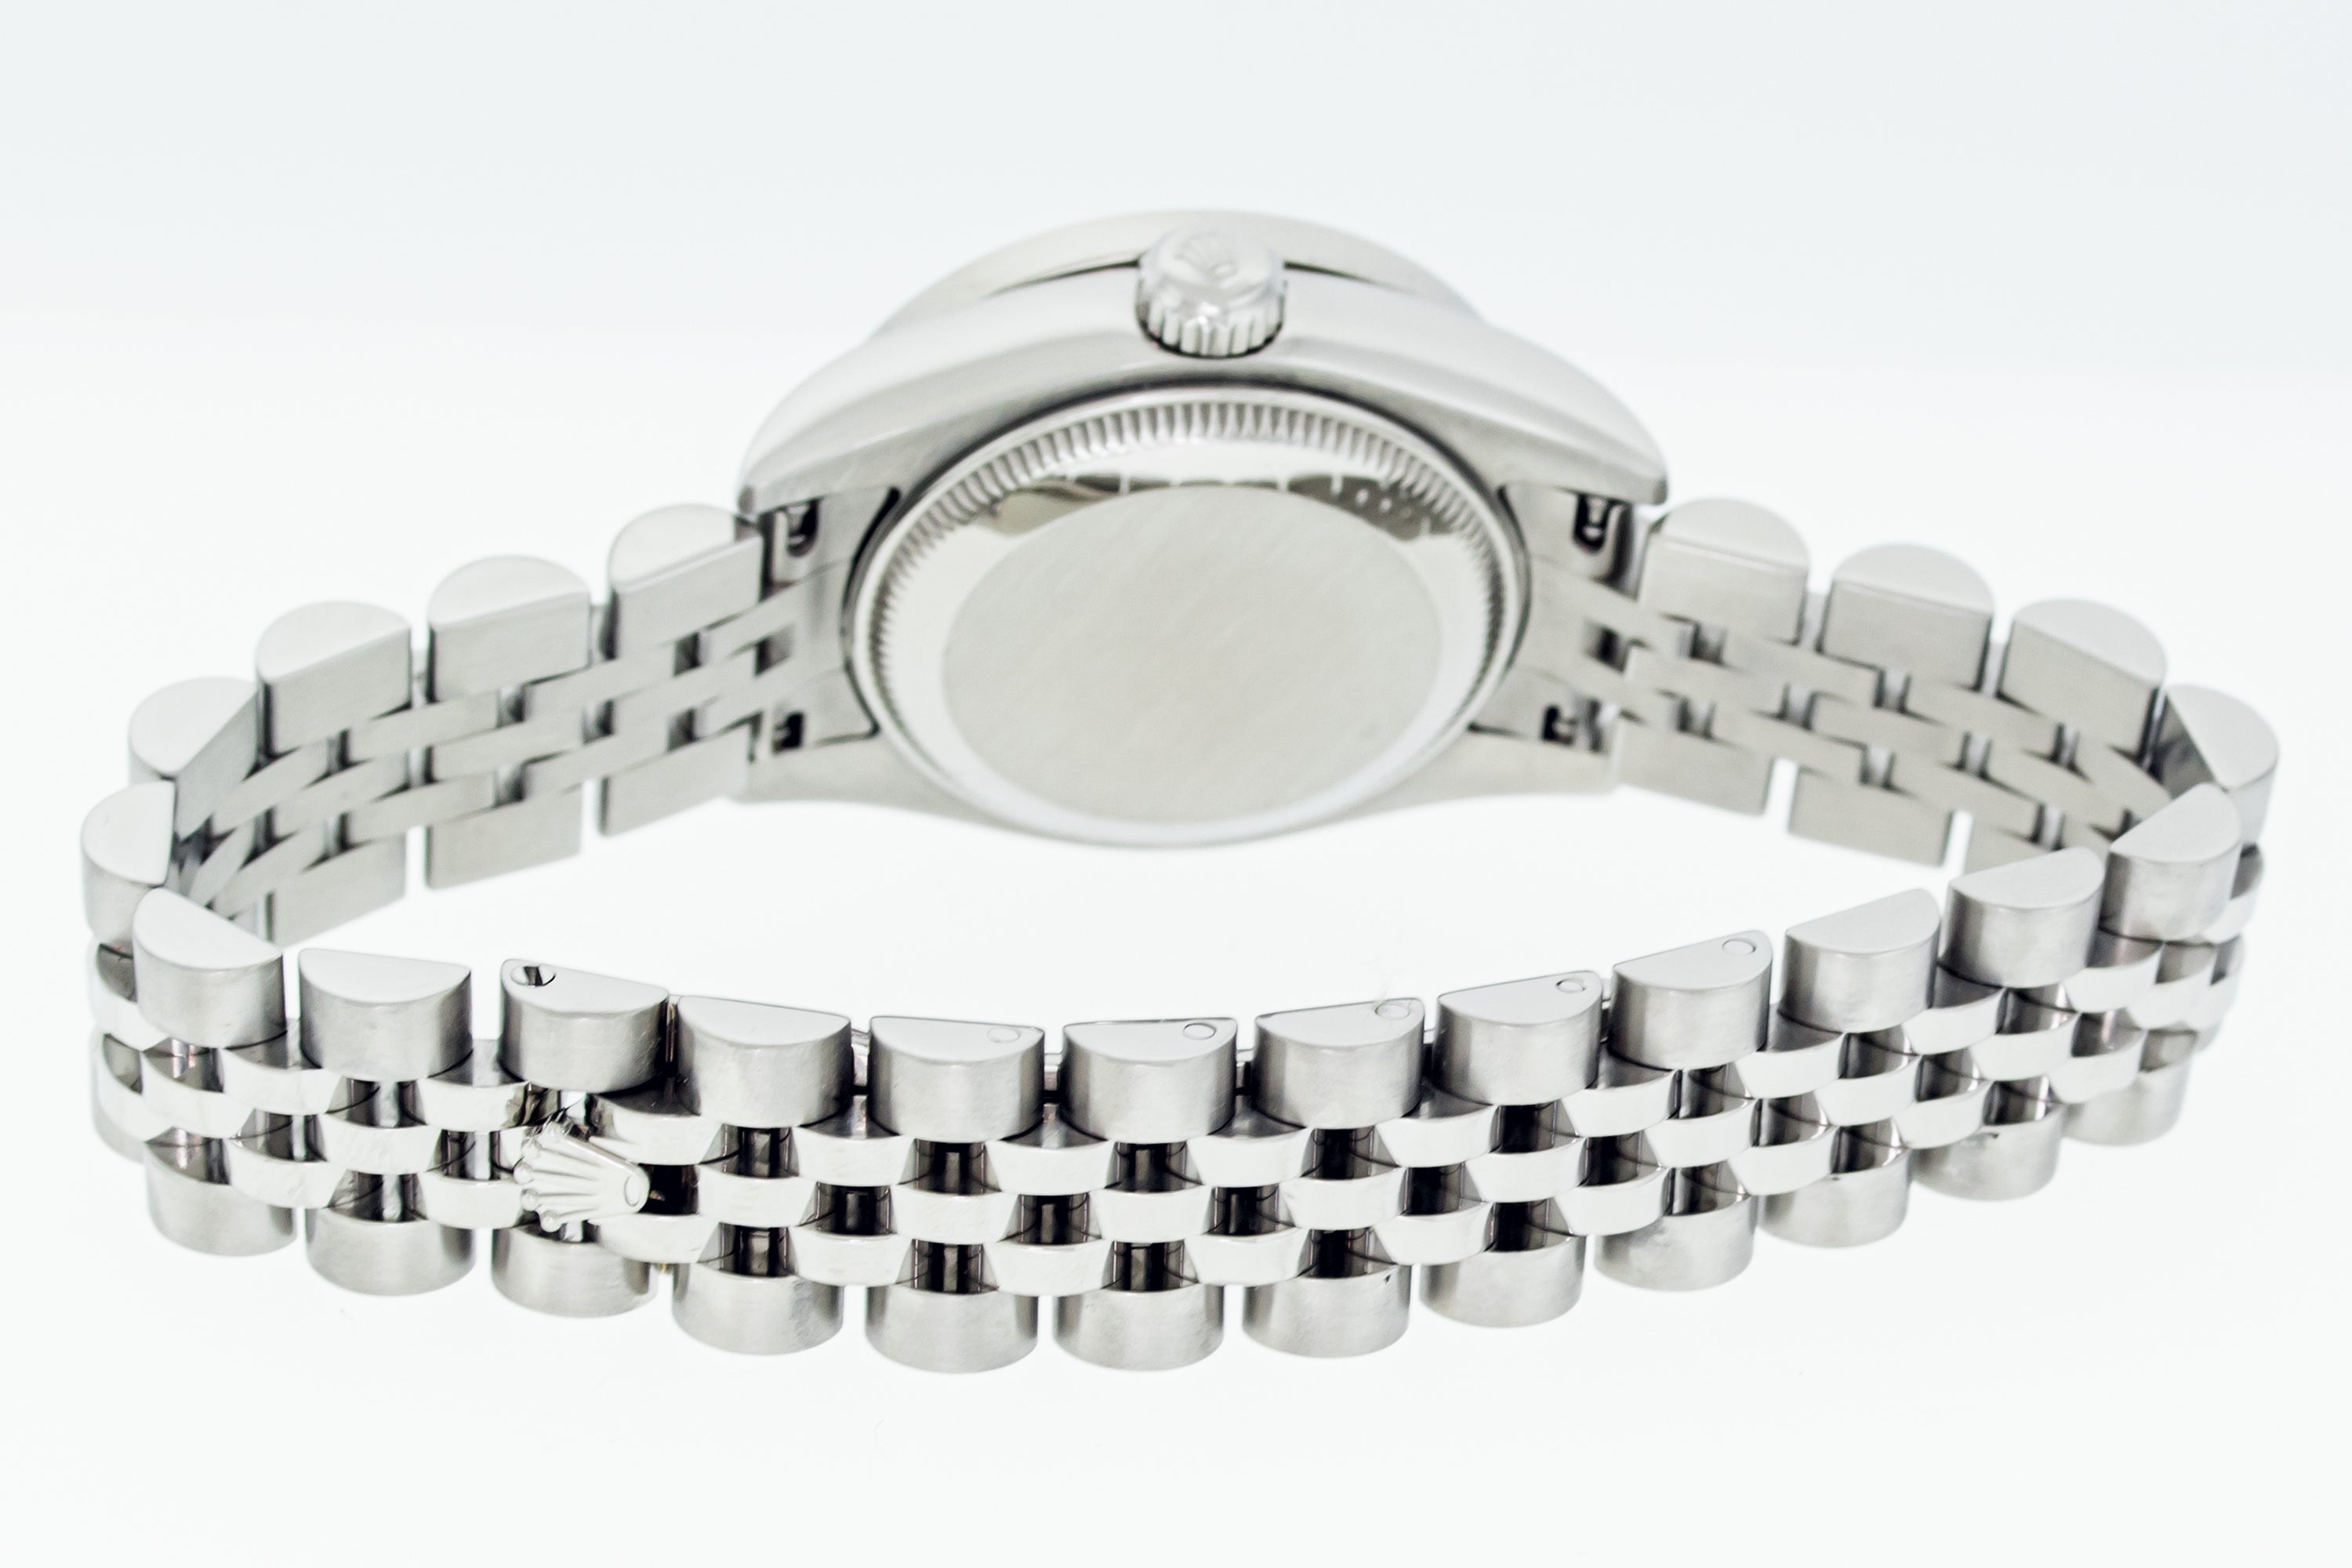 Rolex Ladies Datejust 179174 Steel and 18 karat Gold White Roman Diamond Watch